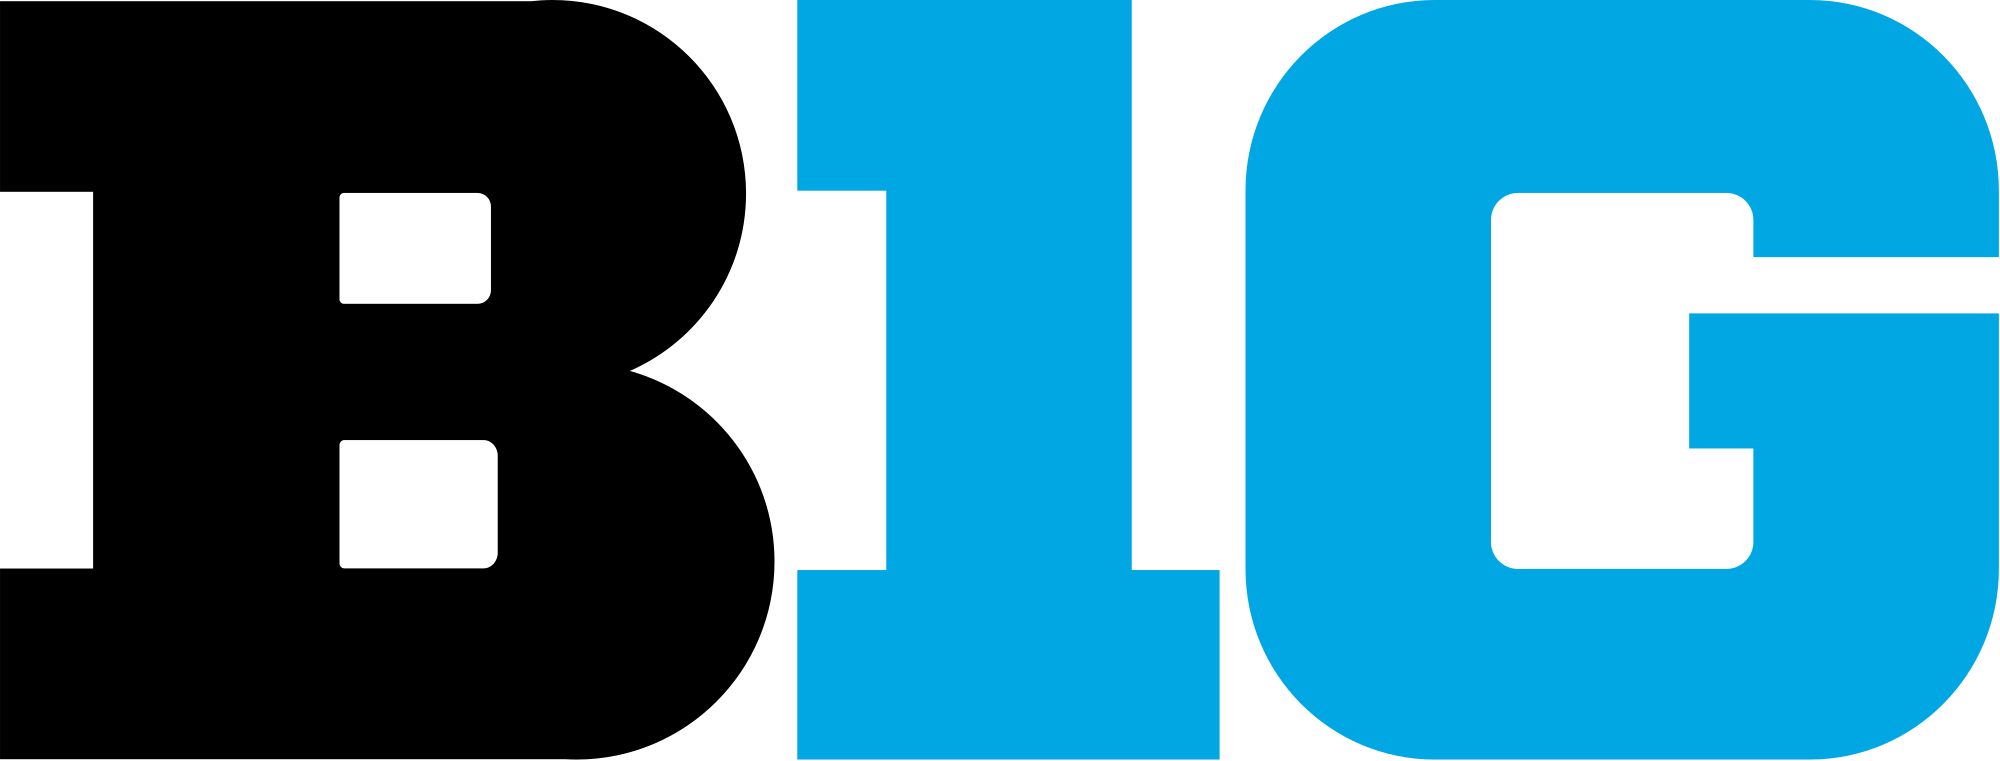 big ten 10